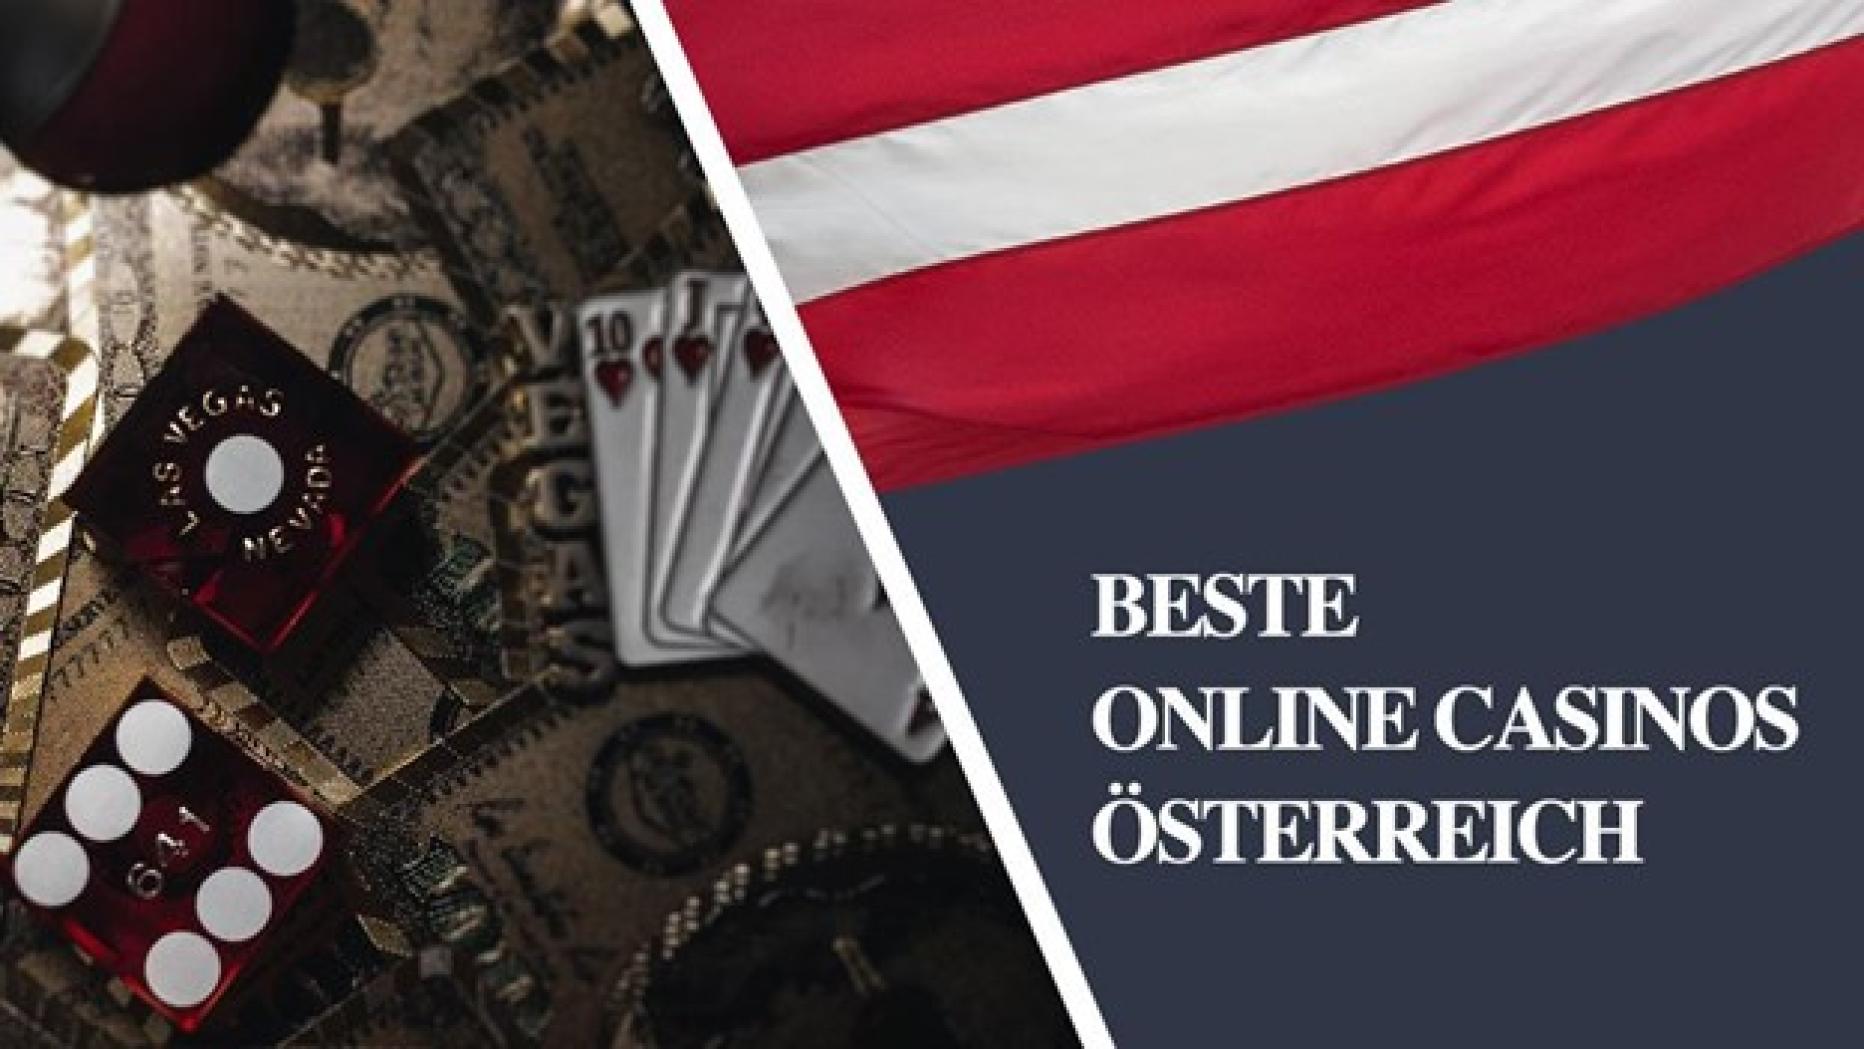 3 Gründe, warum Facebook die schlechteste Option für bestes Online Casino Österreich ist